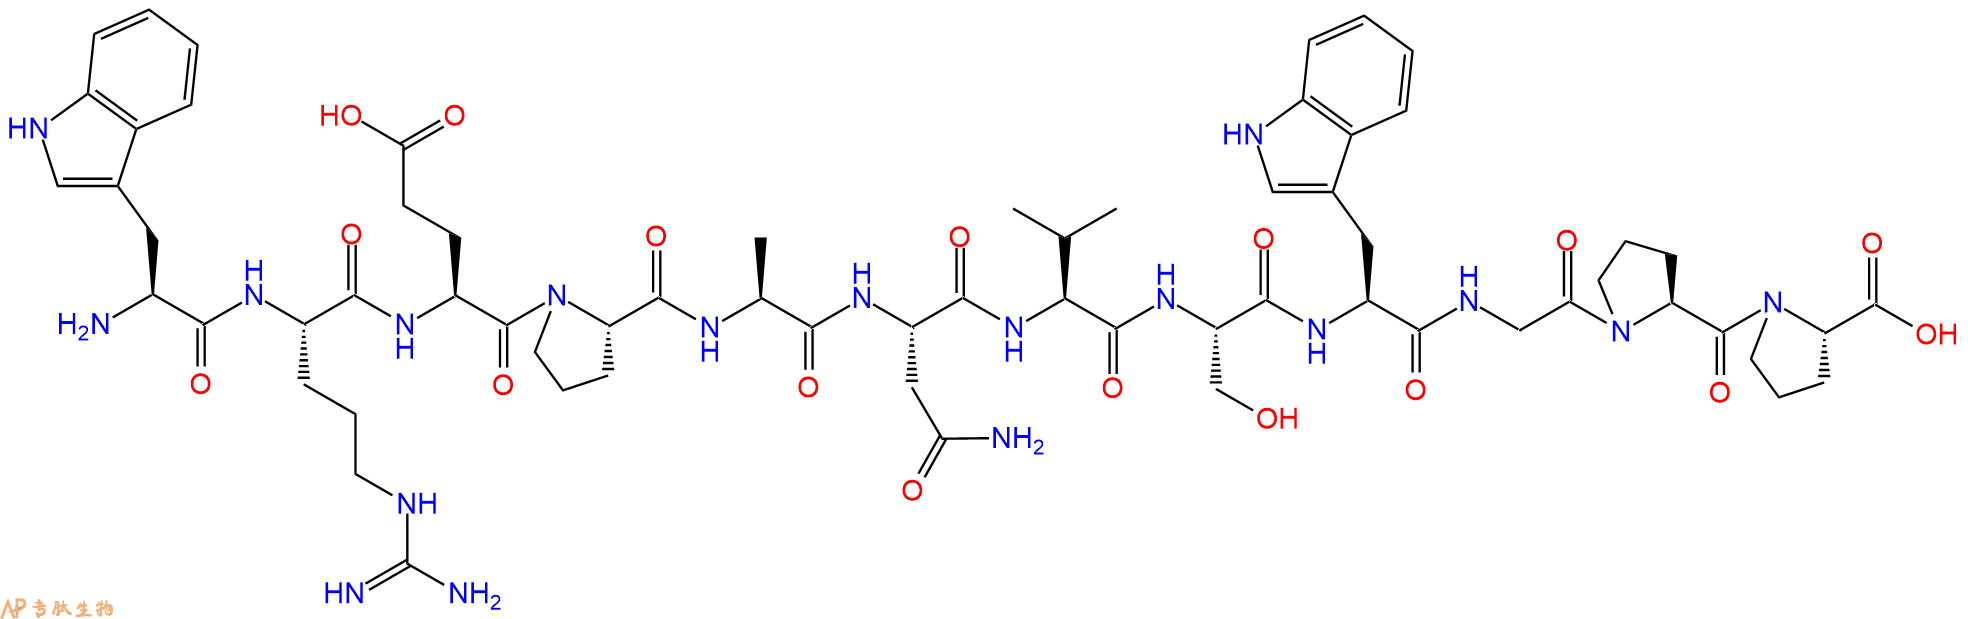 专肽生物产品H2N-Trp-Arg-Glu-Pro-Ala-Asn-Val-Ser-Trp-Gly-Pro-Pr